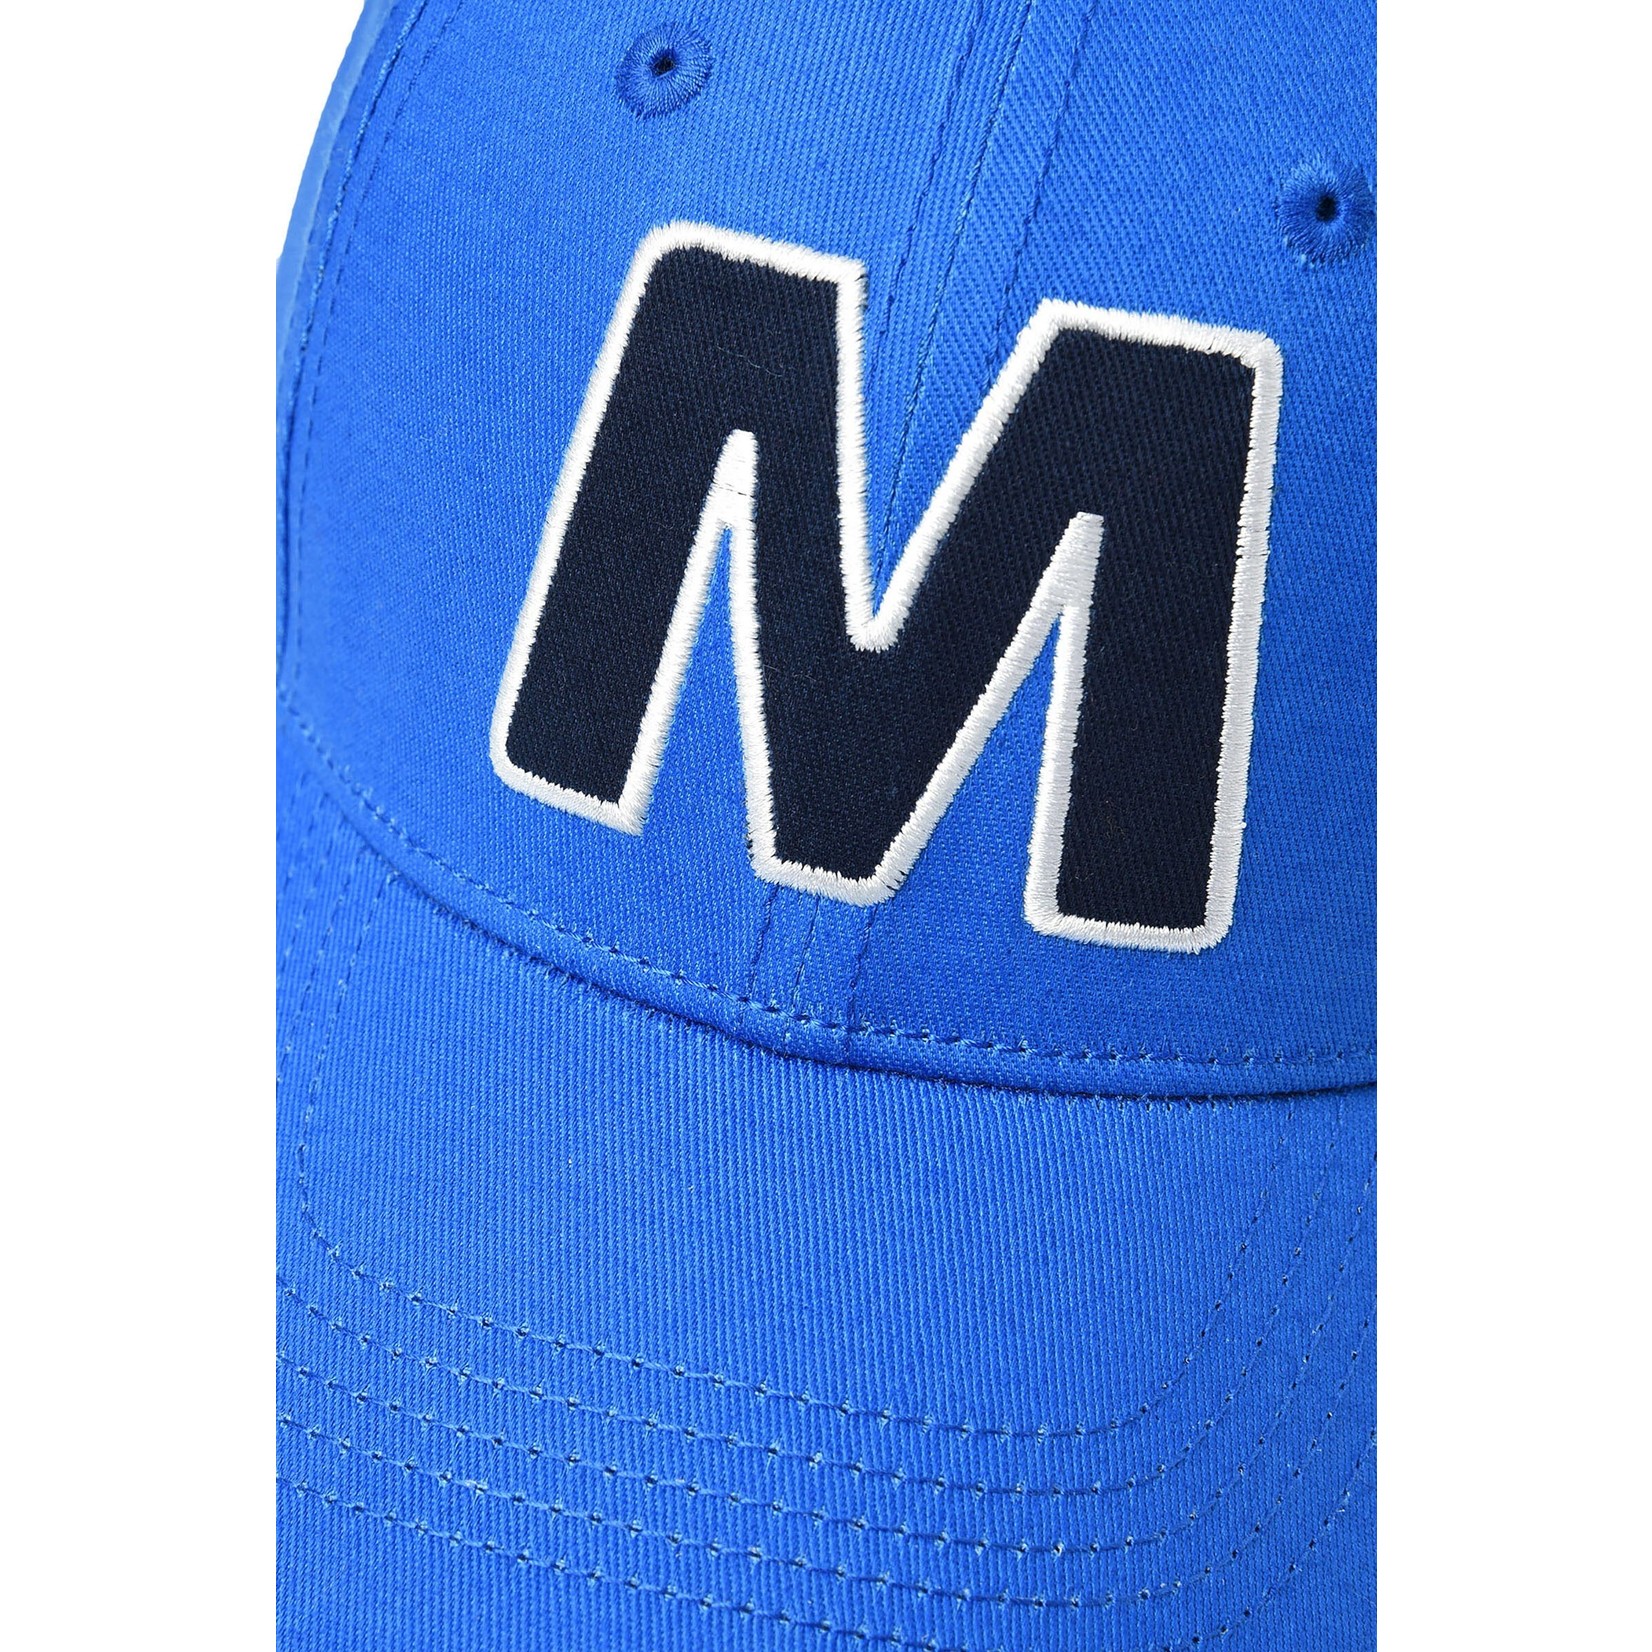 Marni Marni - baseball cap with M logo